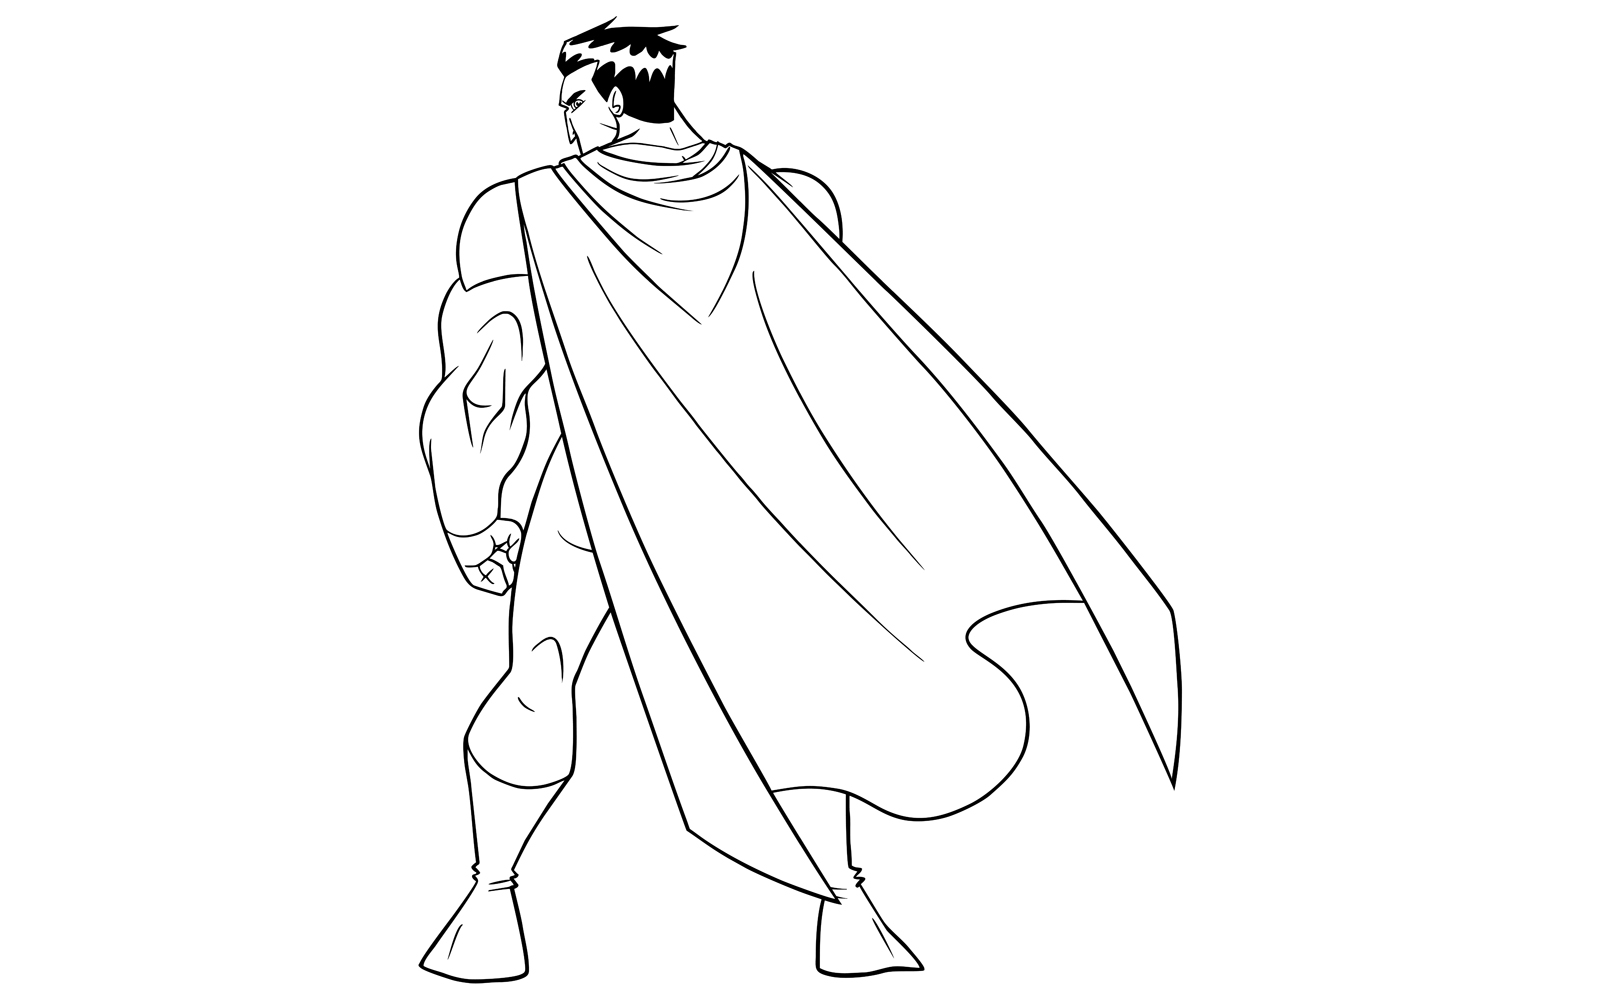 Superhero Battle Mode Back Line Art - Illustration